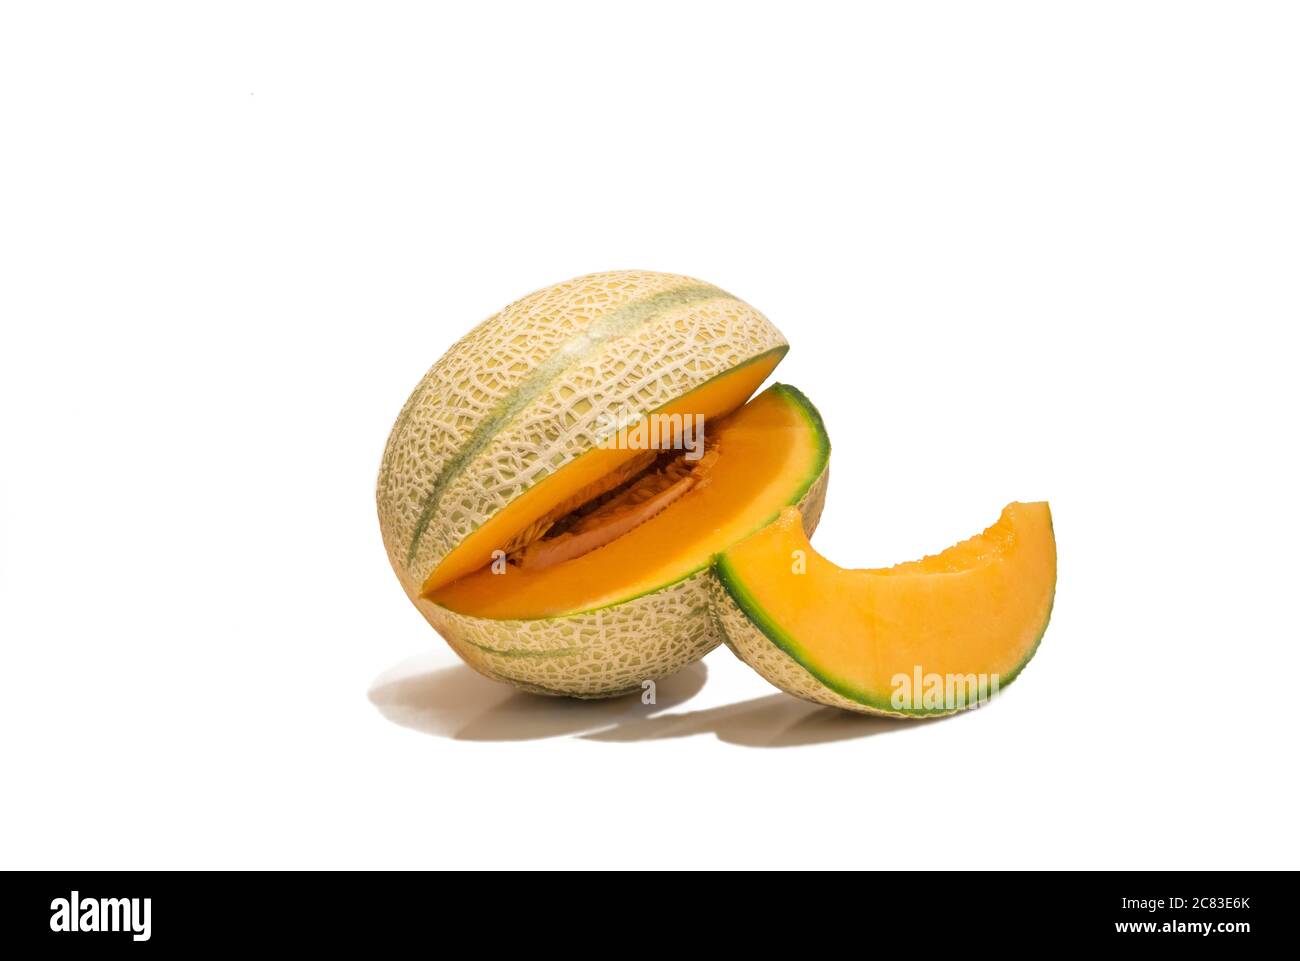 Melone di cantalupe appena maturo tagliato a cuneo e una fetta di melone isolata su sfondo bianco Foto Stock